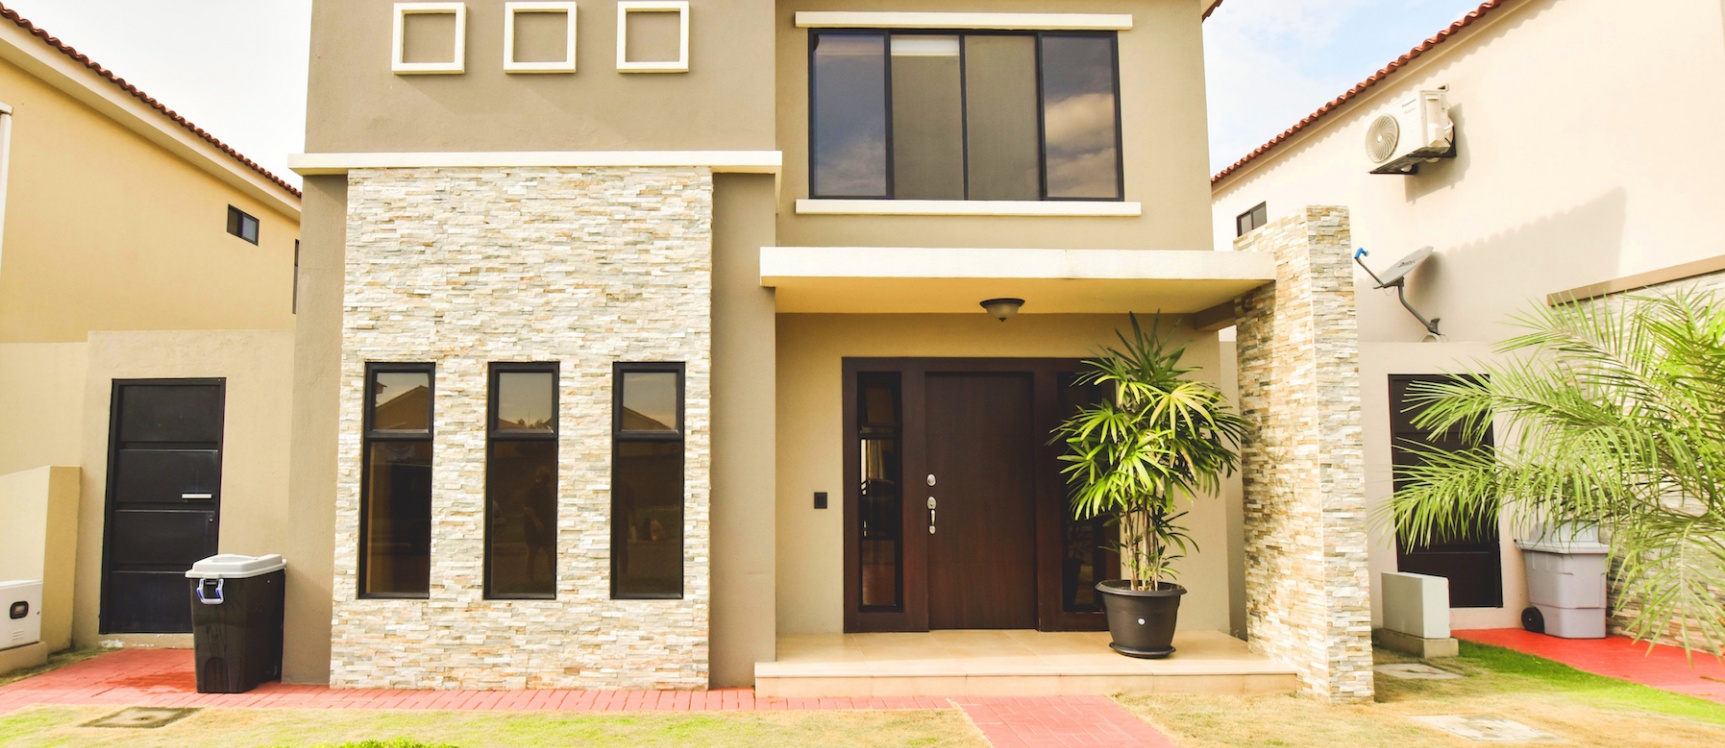 GeoBienes - Casa en venta ubicada en Ciudad Celeste - Plusvalia Guayaquil Casas de venta y alquiler Inmobiliaria Ecuador